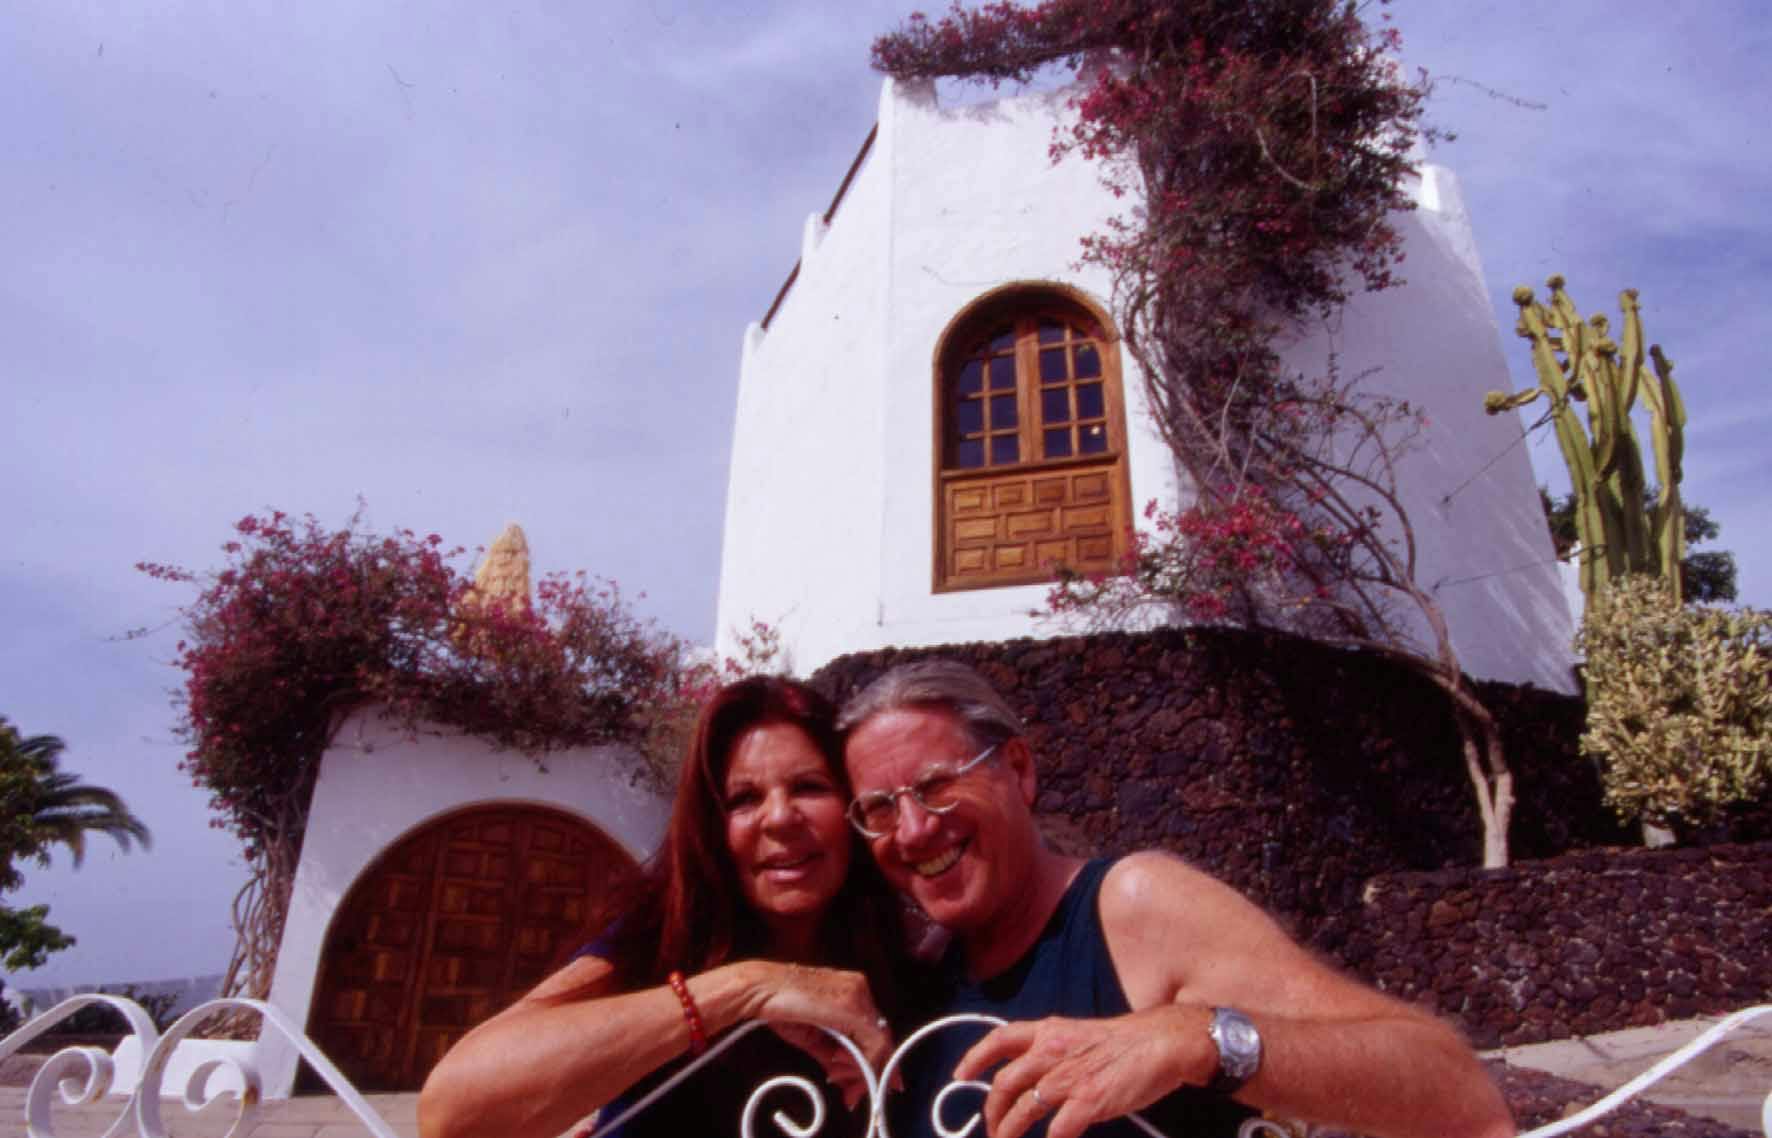 Toni und seine Frau Ruthli vor ihrem Haus in Teneriffa.